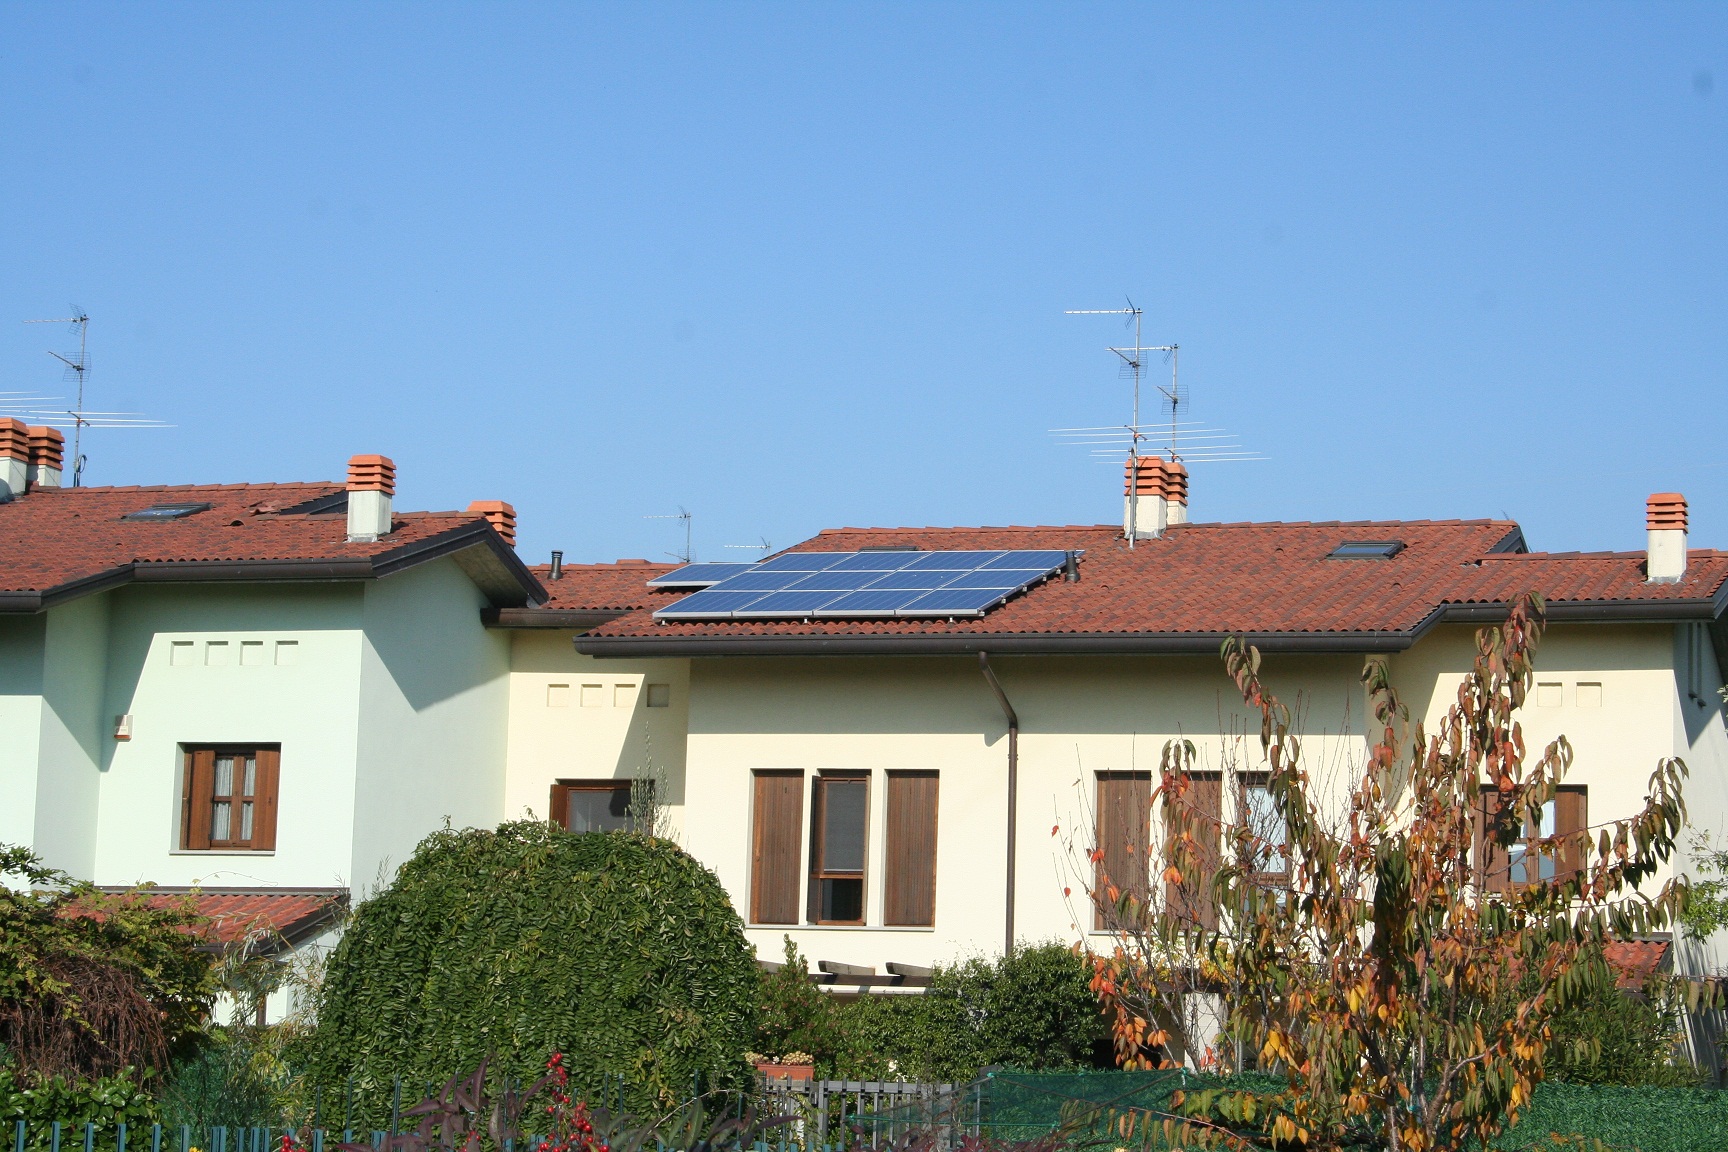 Ceress - Comunità energetiche rinnovabili